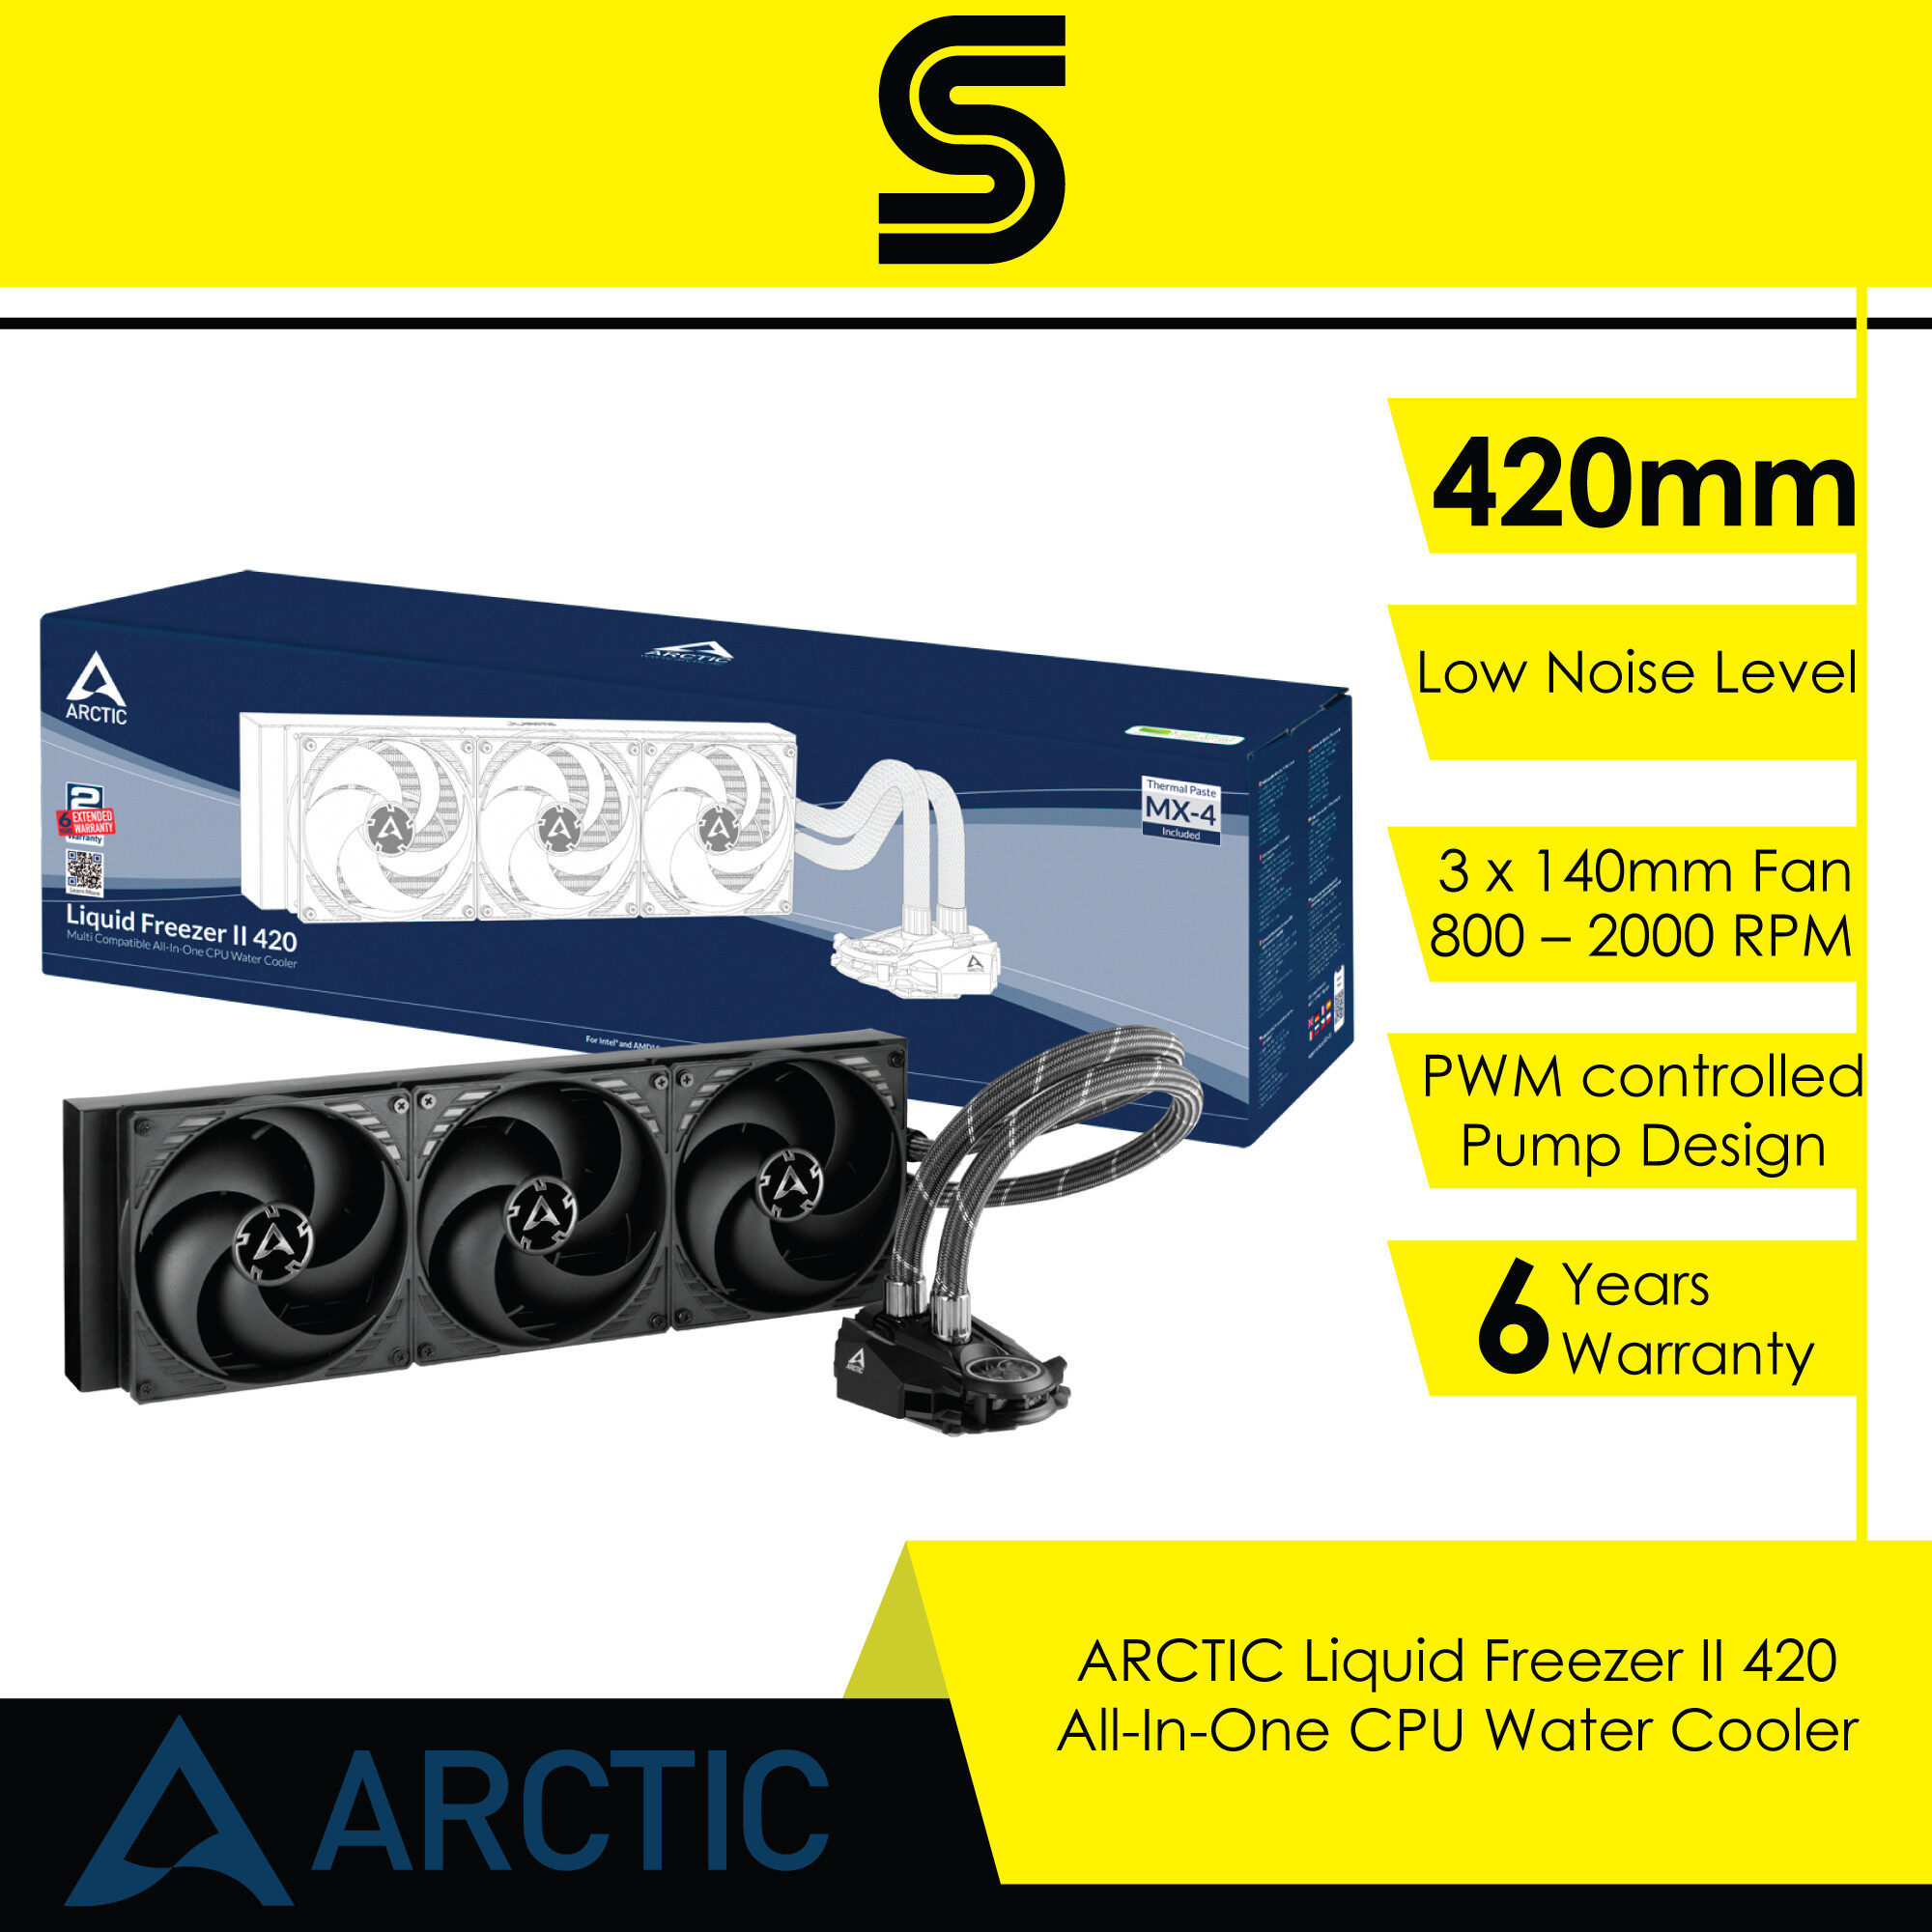 ARCTIC Liquid Freezer II 420 All-In-One CPU Water Cooler